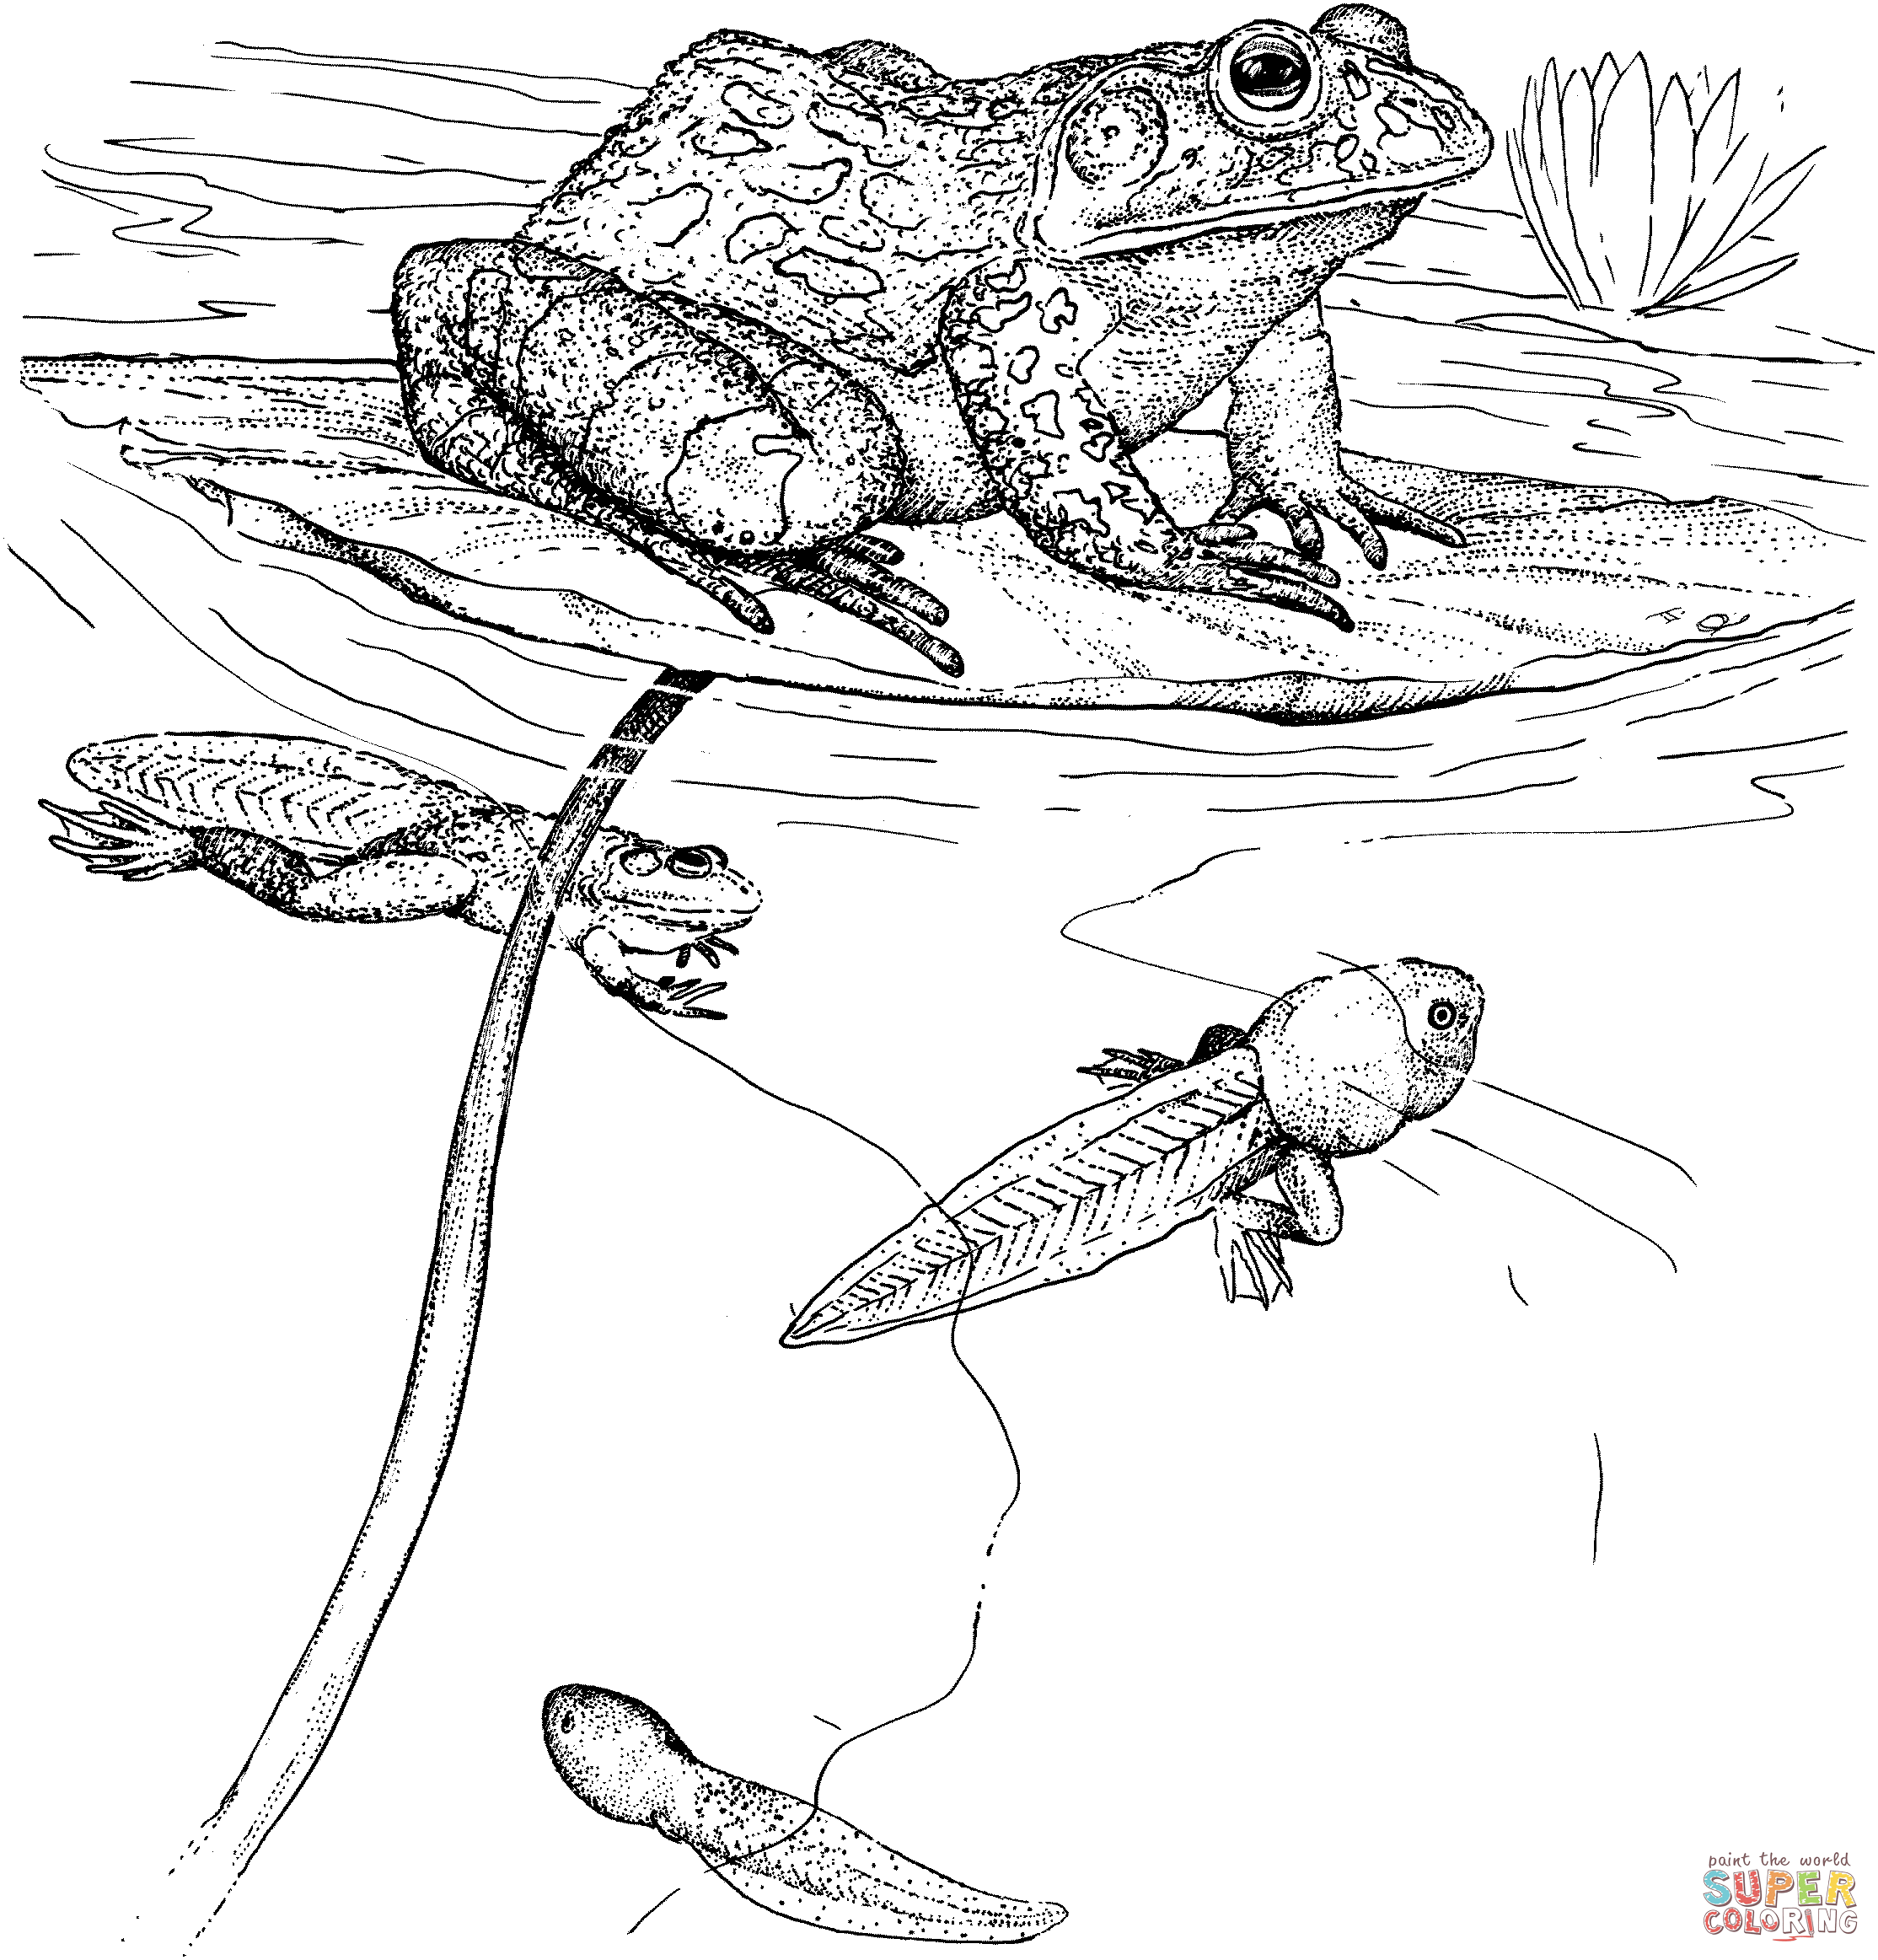 Bullfrog coloring #8, Download drawings